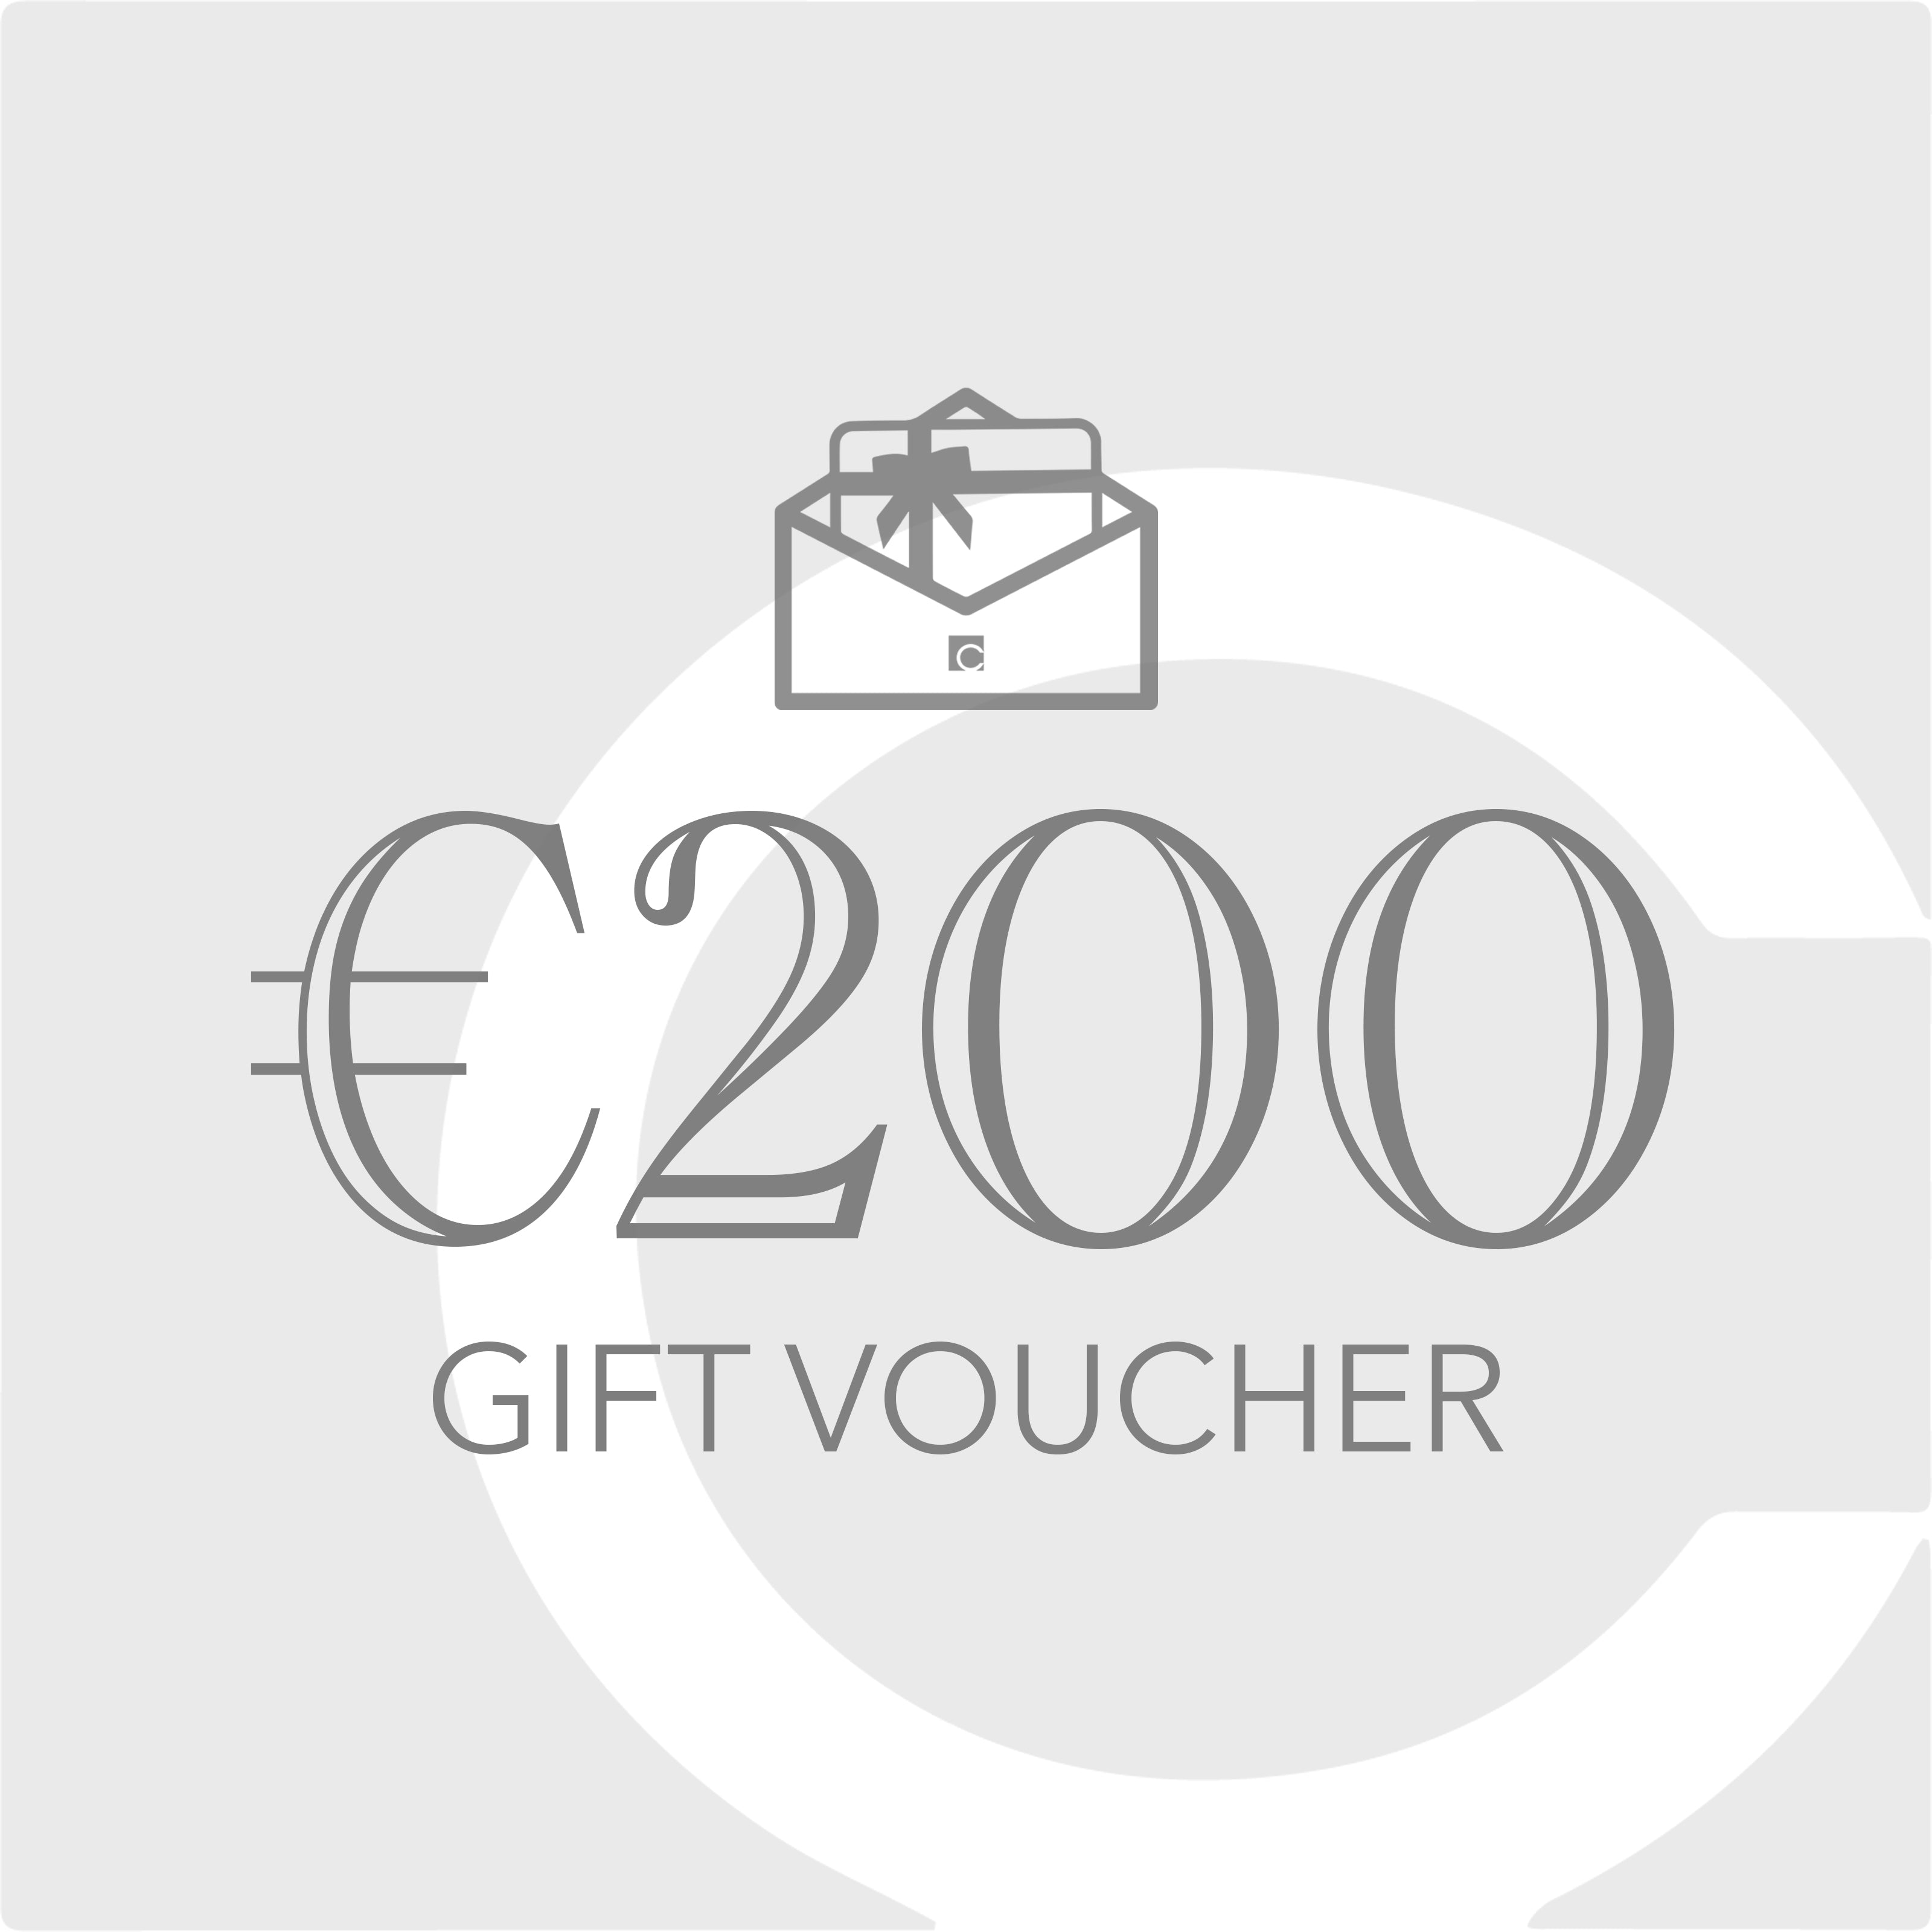 €200 Gift Voucher